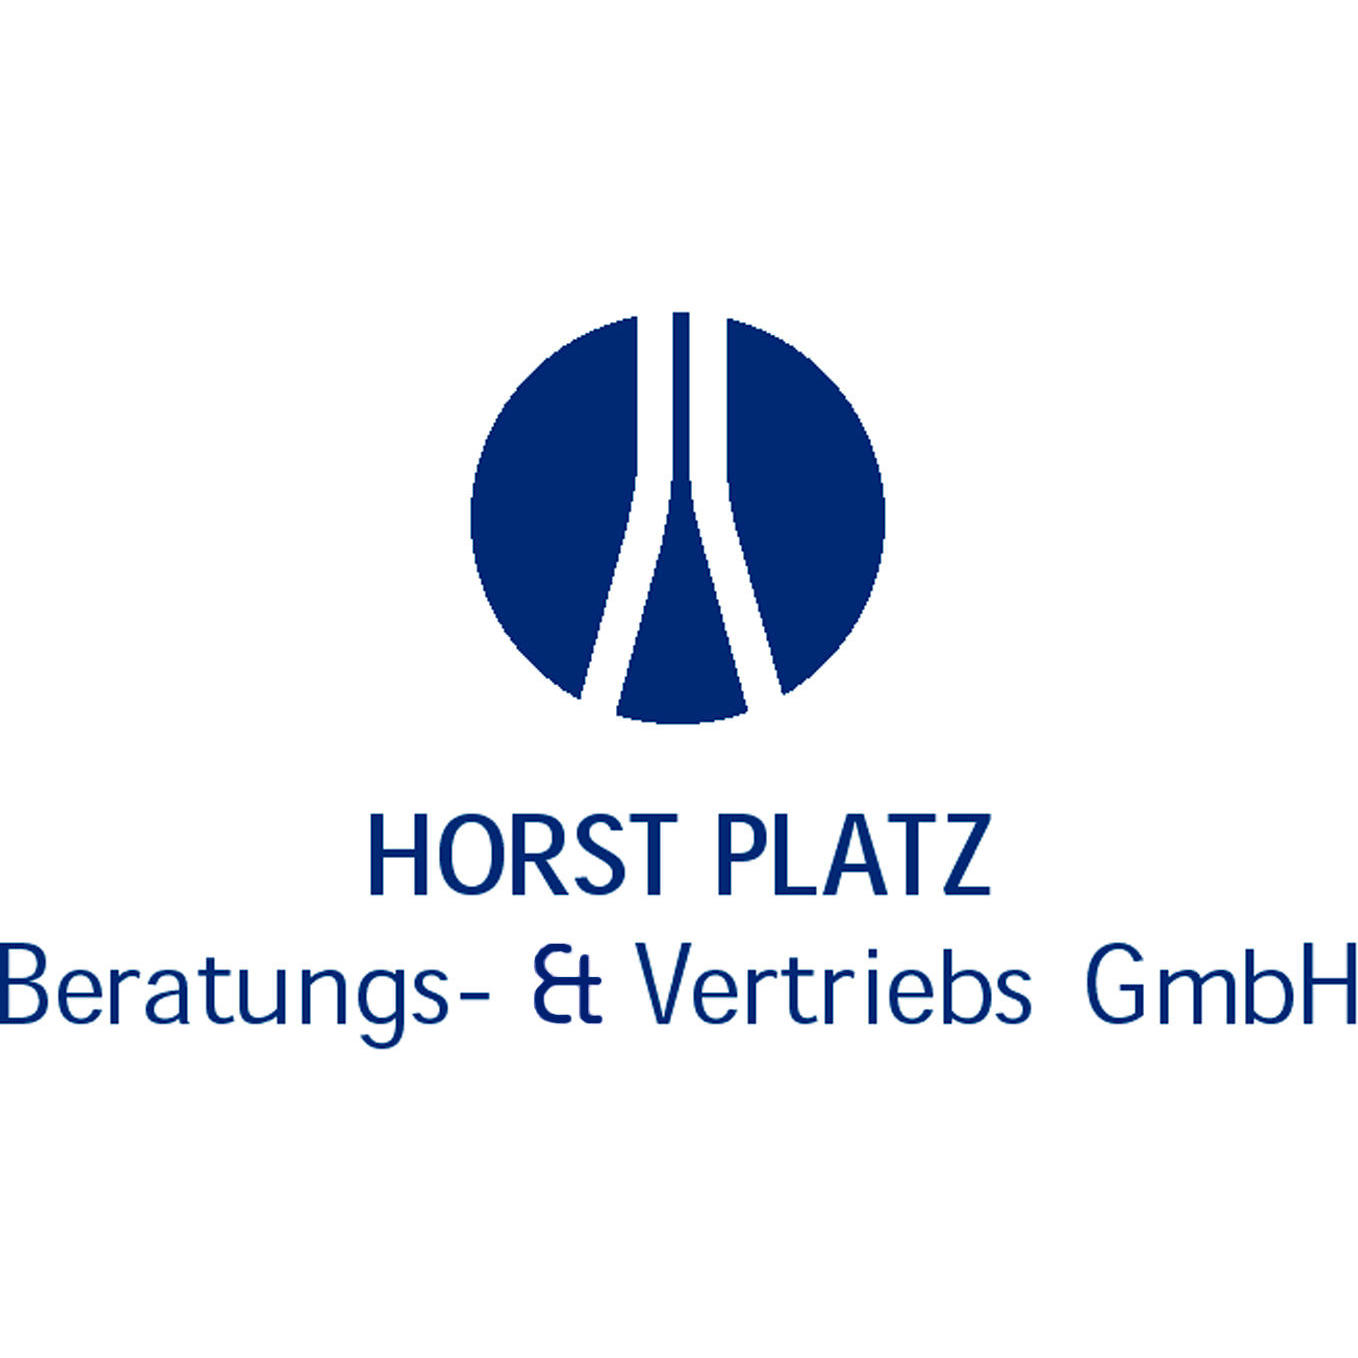 Horst Platz Beratungs- & Vertriebs GmbH in Friedrichsdorf